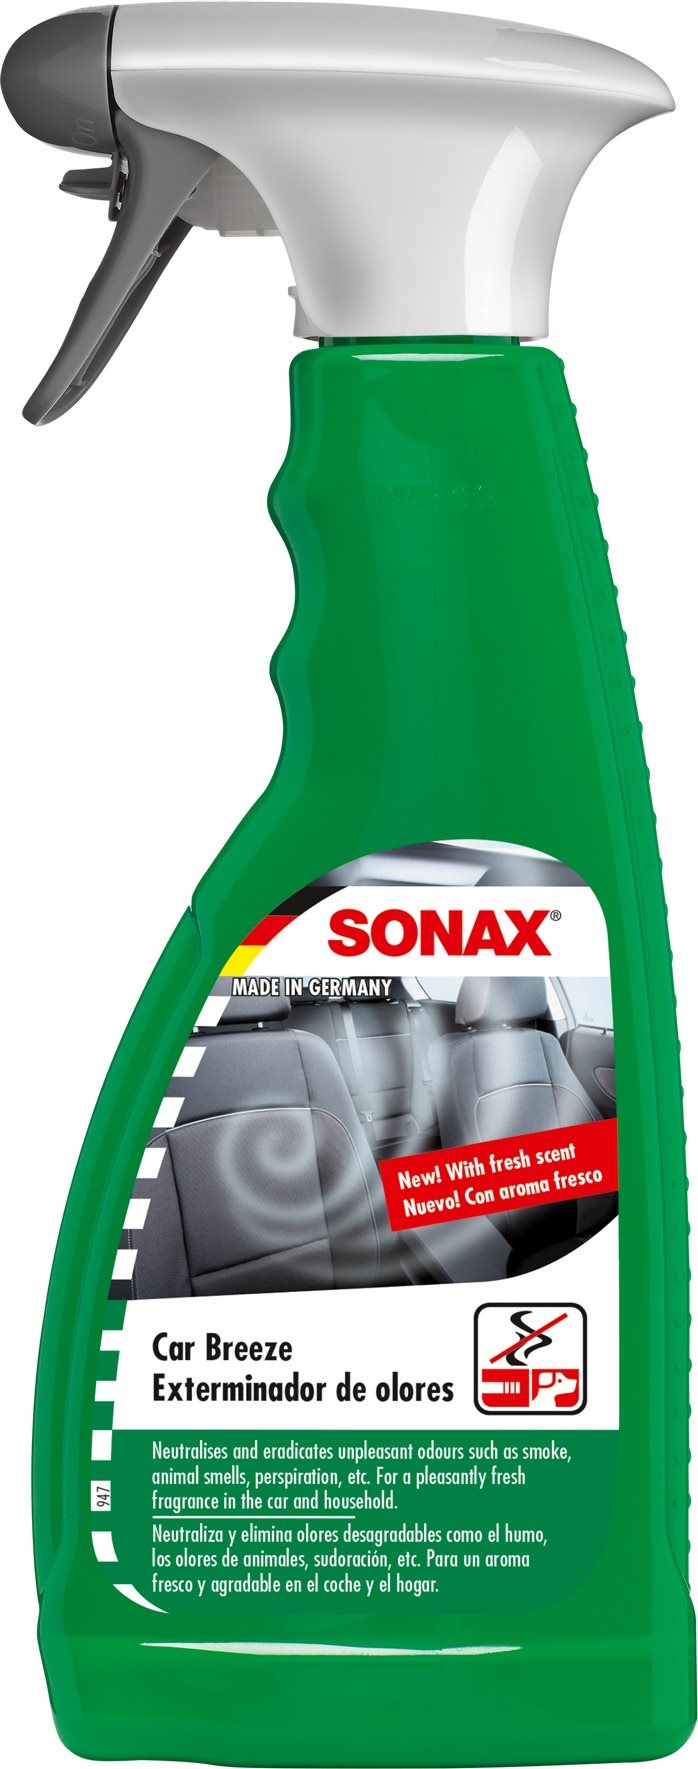 SONAX odeur szag elnyelő terelő, Odeur-Beater 500 ml